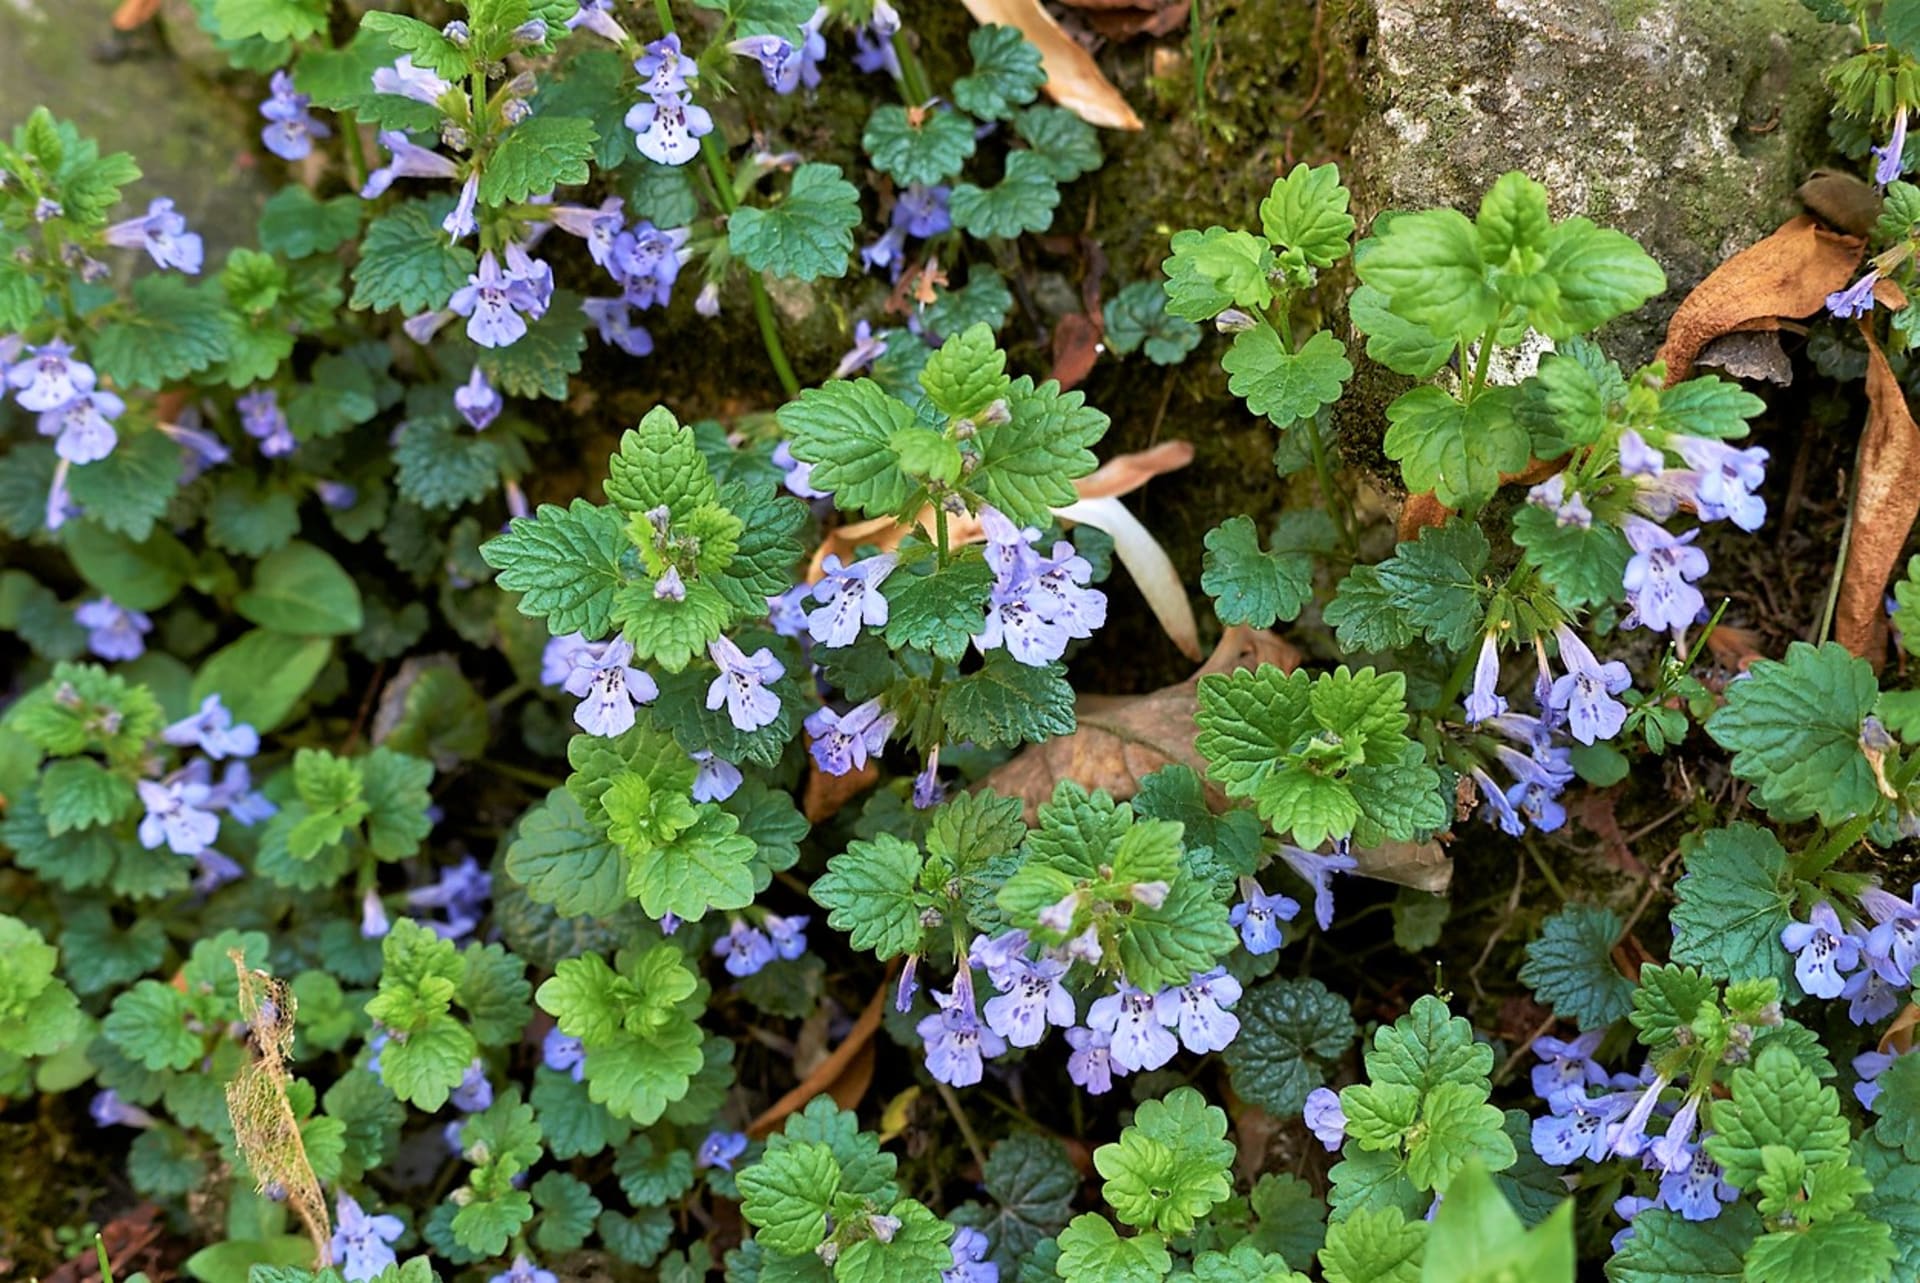 Popenec obyčajný (Glechoma hederacea) je nenápadná trváca plazivá rastlina s drobnými modrofialovými kvetmi a srdcovitými listami